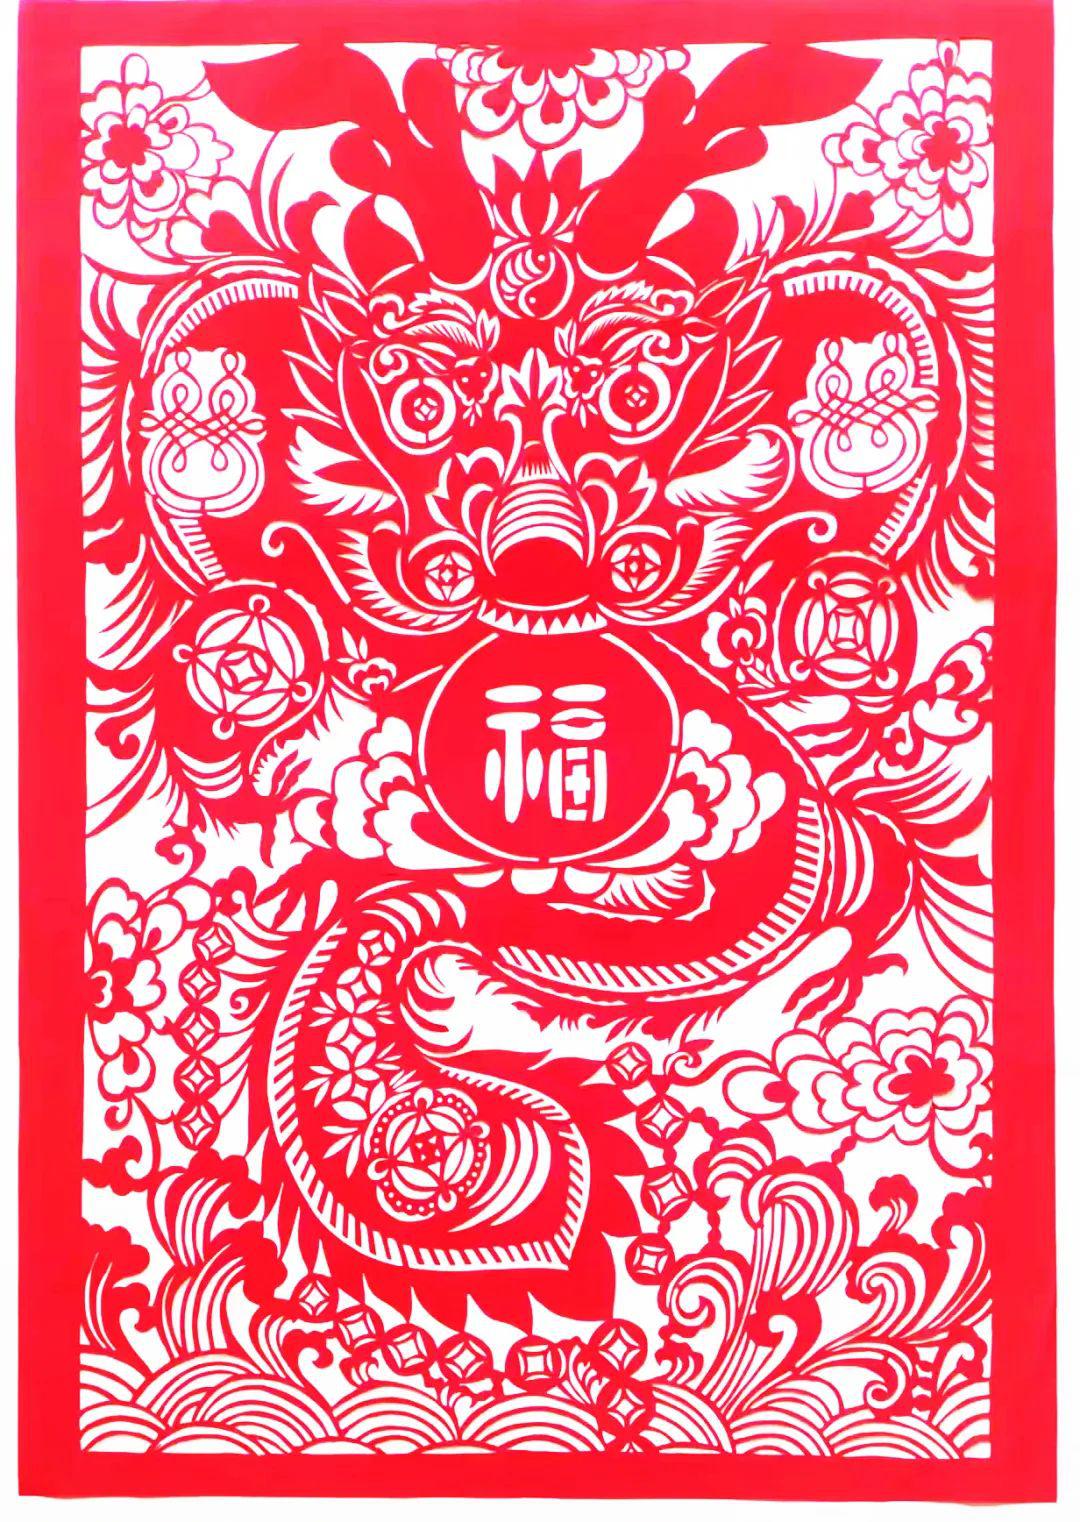 中国民间剪纸微刊《百年献瑞迎新年》全国龙文化剪纸精品展览 图171